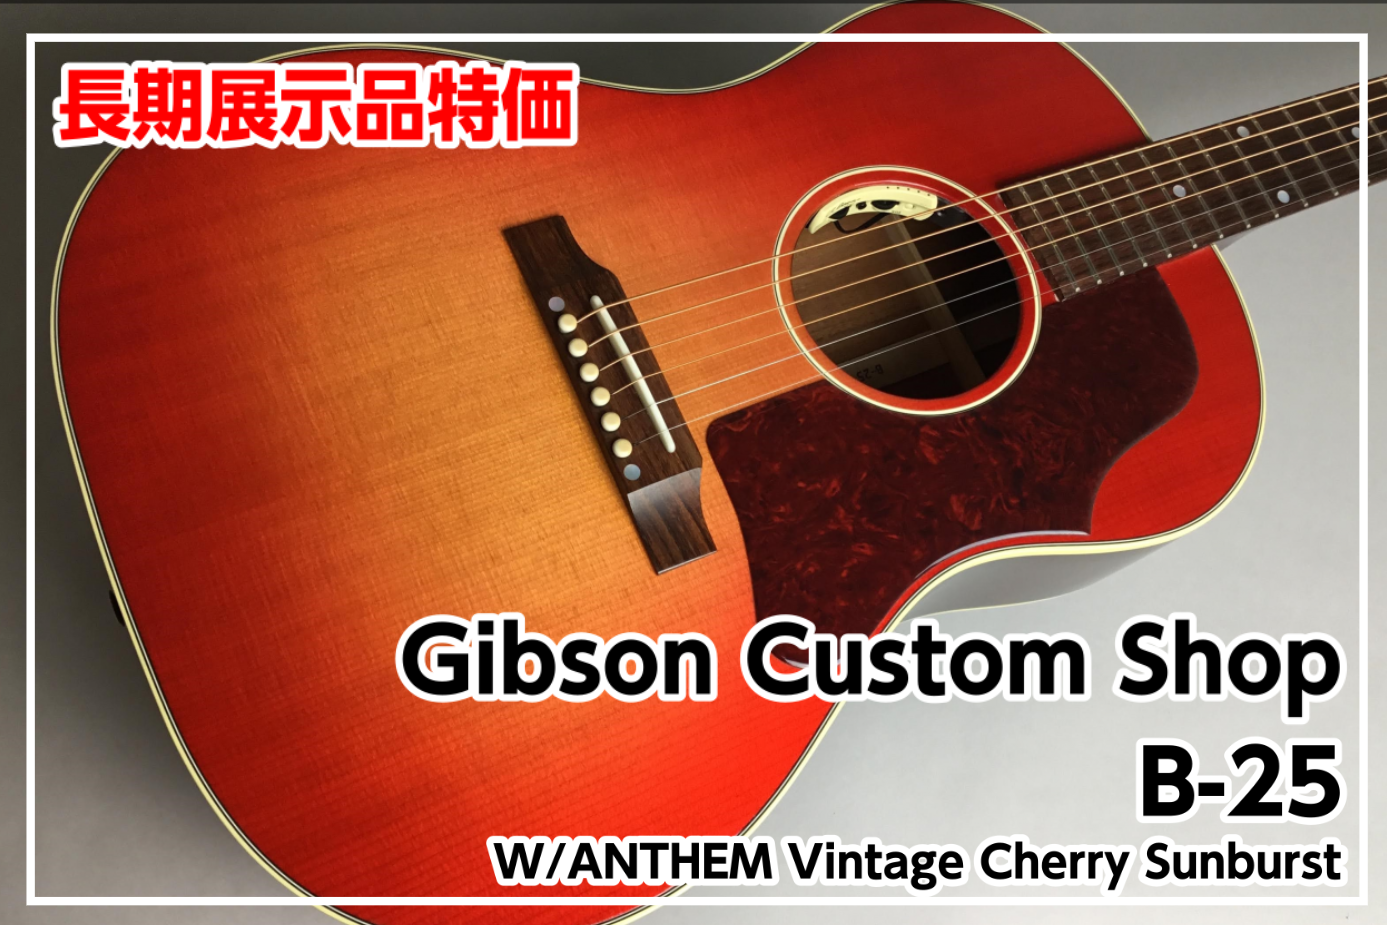 *【長期展示品特価】Gibson Custom Shop Custom Shop B-25 W/ANTHEM Vintage Cherry Sunburst カスタムショップ製B-25が長期展示・ケースキズ有の為特価！！ *MENU [#a:title=商品紹介] [#b:title=価格] [#c […]